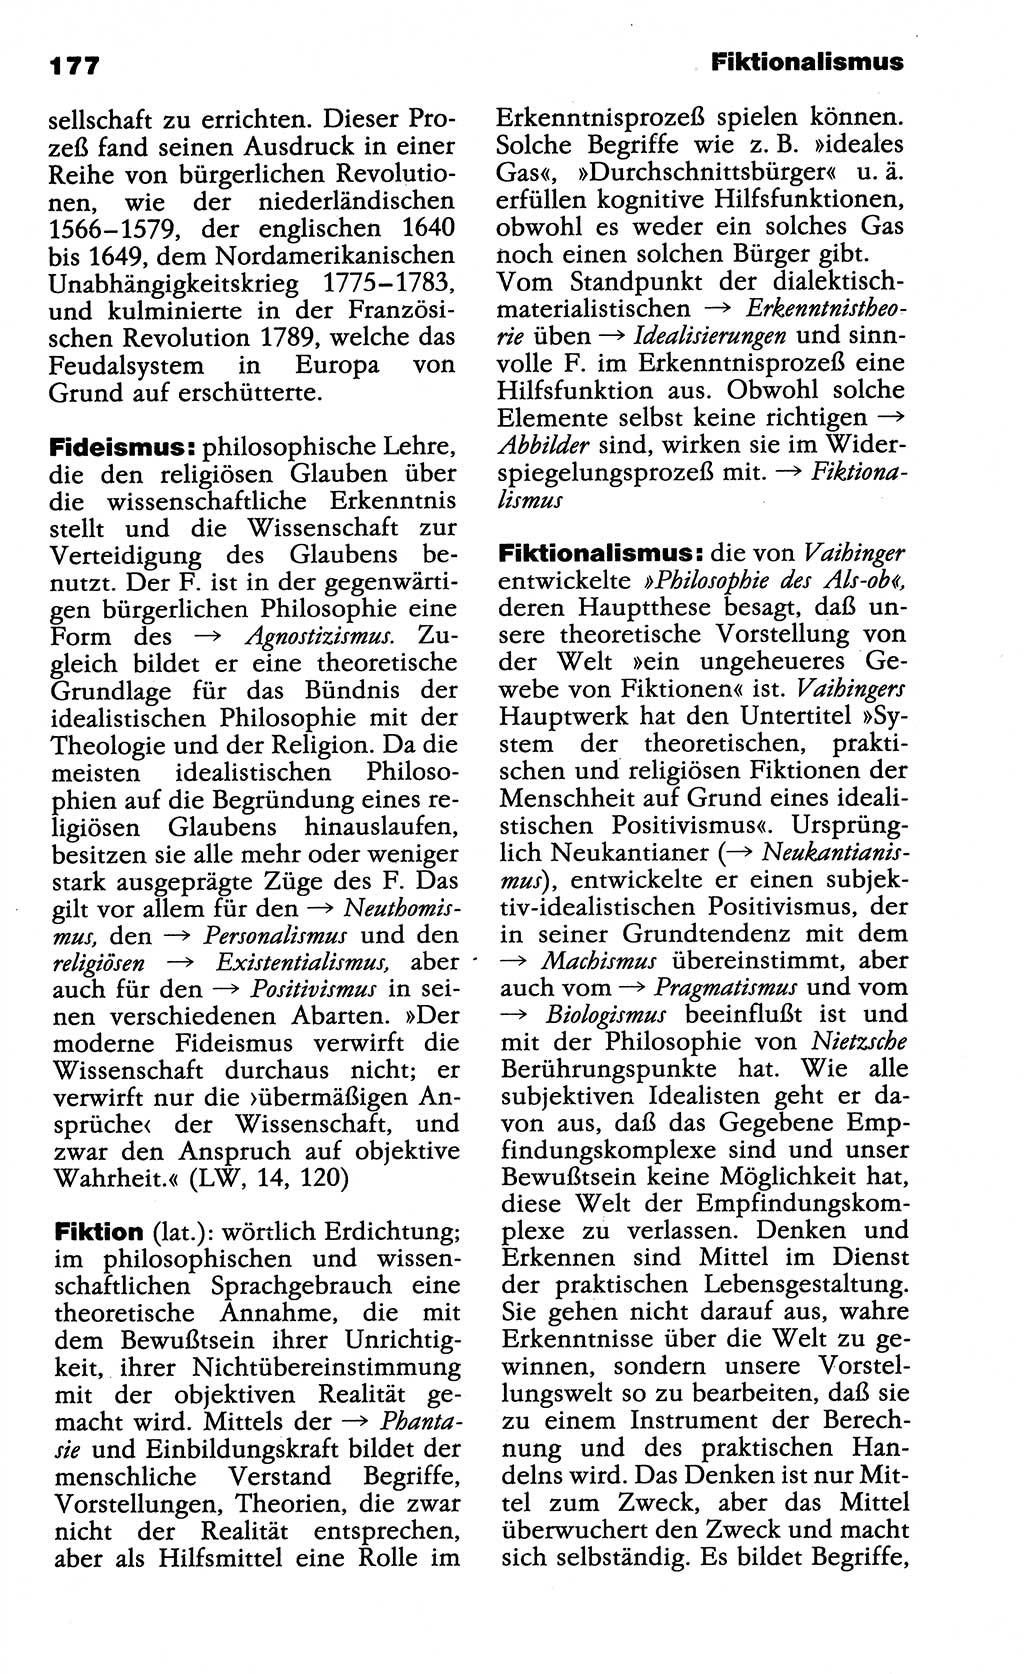 Wörterbuch der marxistisch-leninistischen Philosophie [Deutsche Demokratische Republik (DDR)] 1985, Seite 177 (Wb. ML Phil. DDR 1985, S. 177)